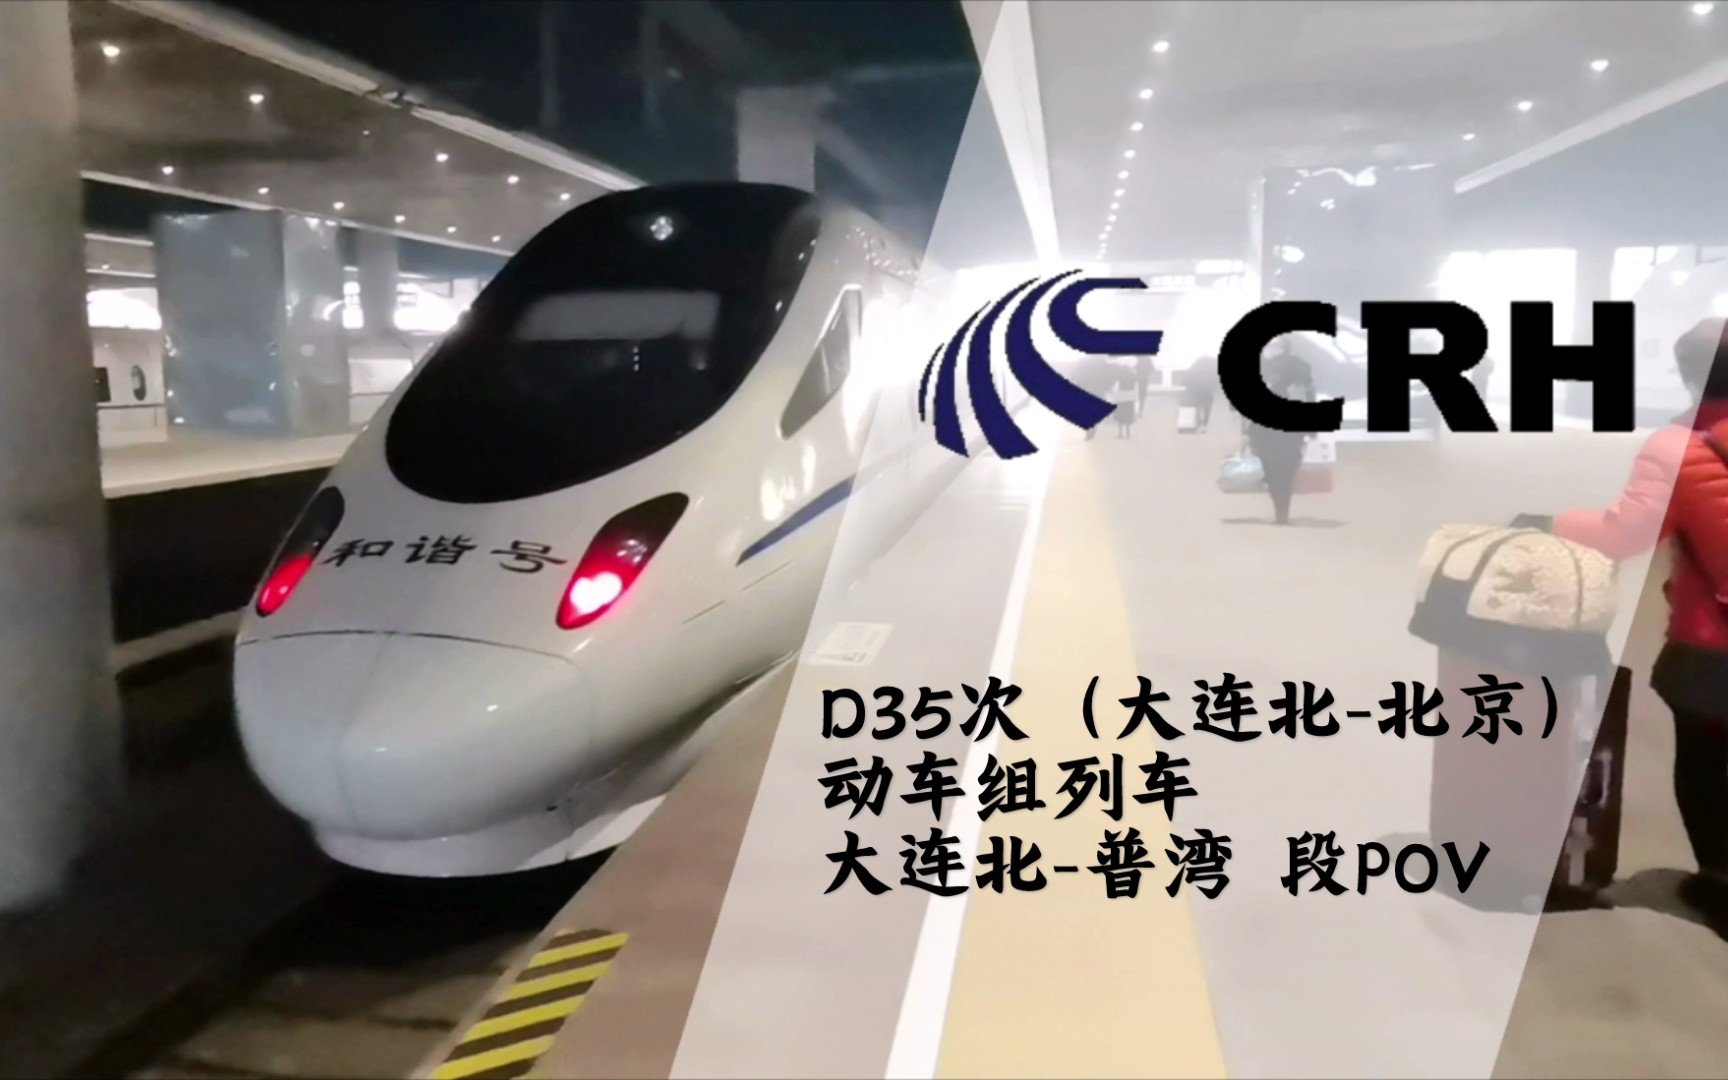 crh中国高铁沐浴着晨光d35发车了d35次动车组列车大连北北京大连北普